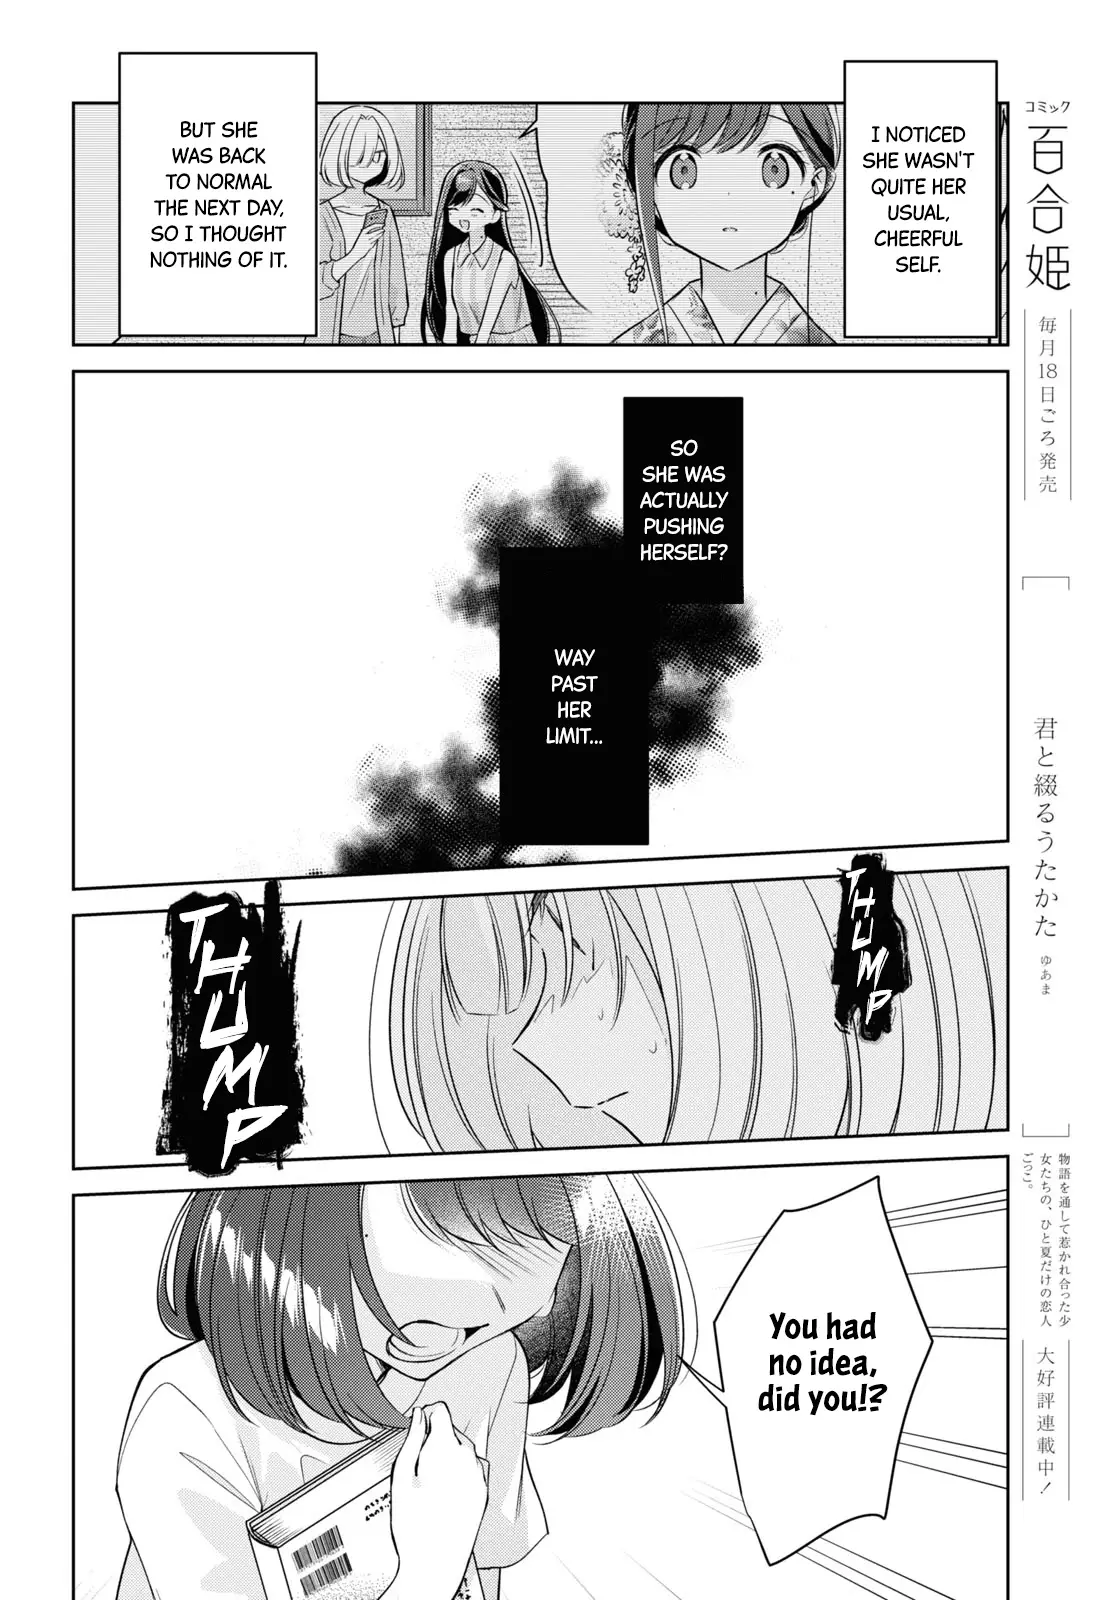 Kimi To Tsuzuru Utakata - 21 page 8-97a9047e